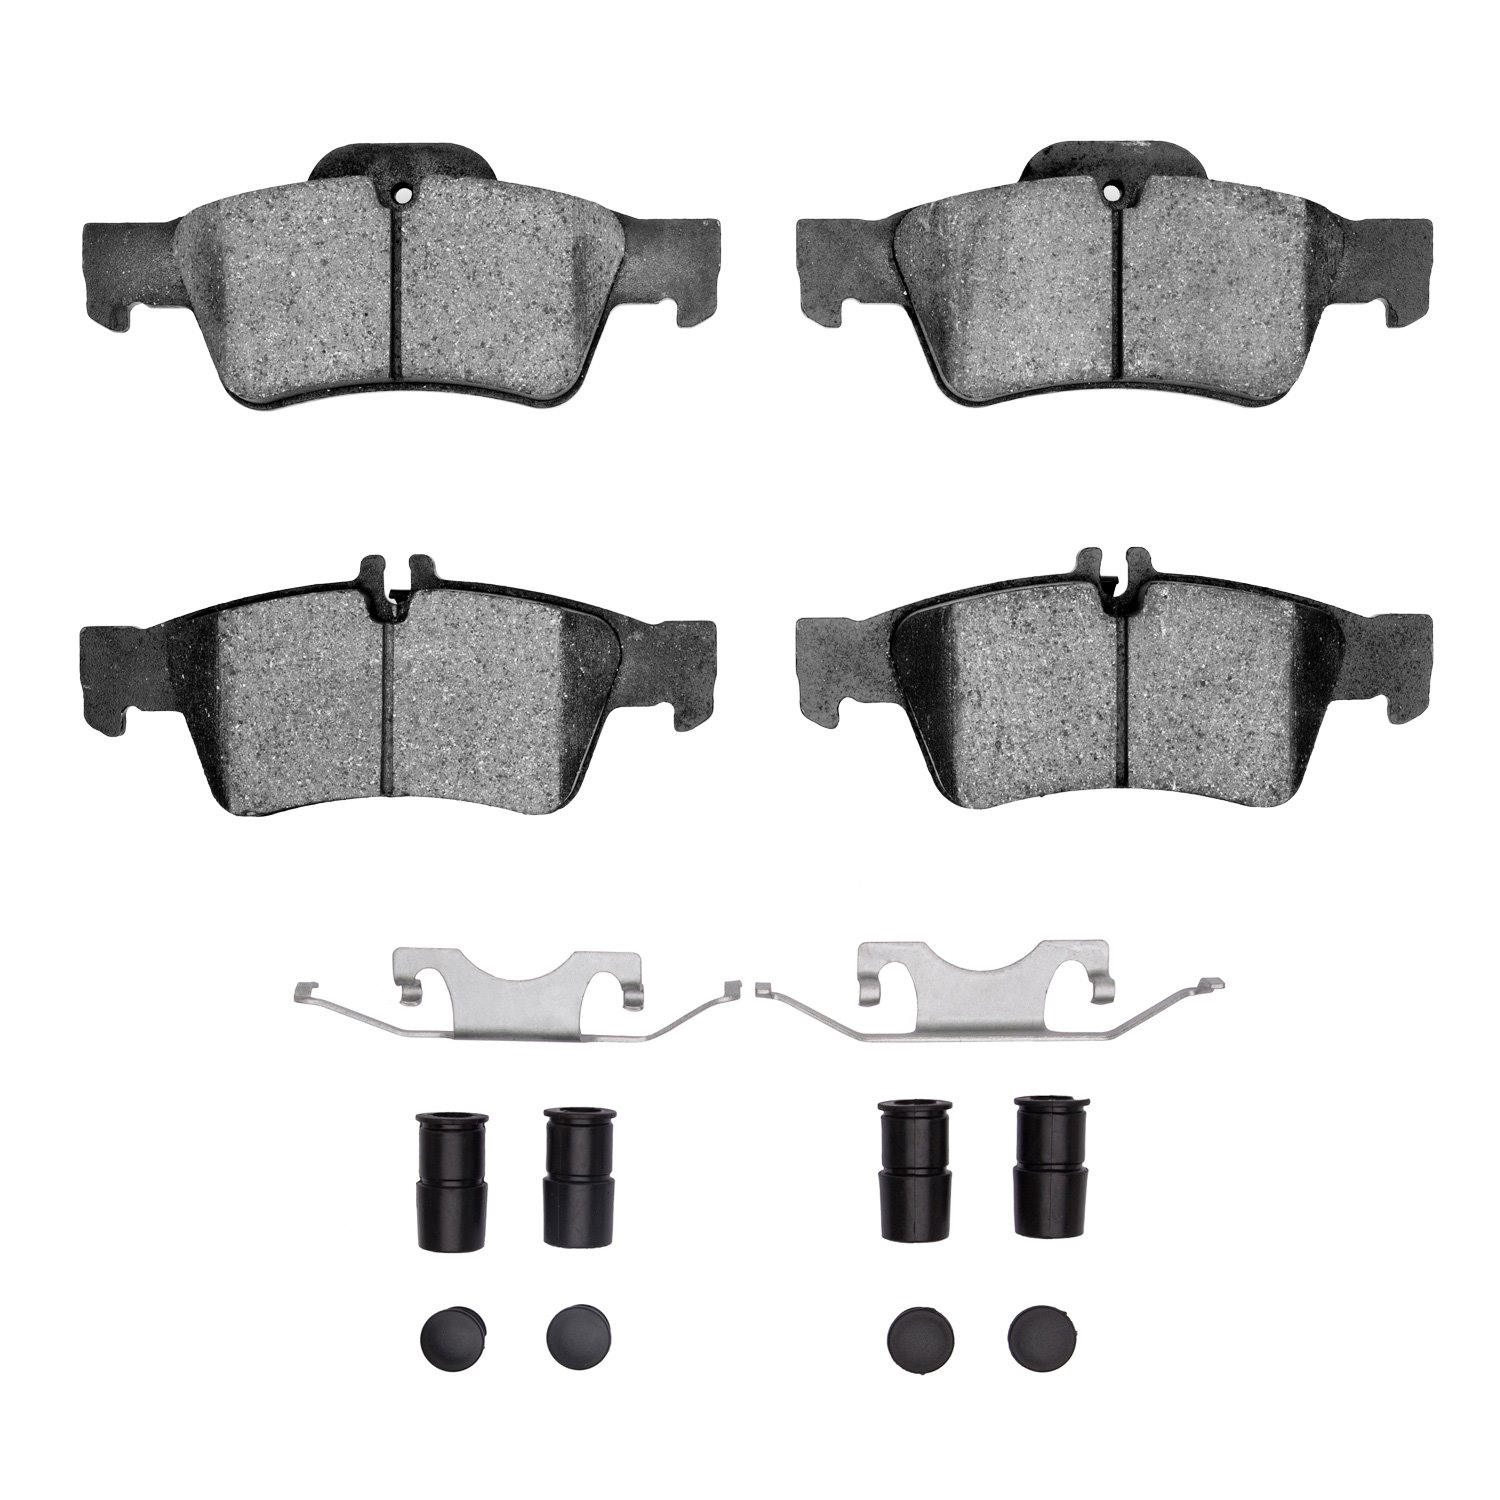 1600-0986-01 5000 Euro Ceramic Brake Pads & Hardware Kit, 2002-2018 Mercedes-Benz, Position: Rear